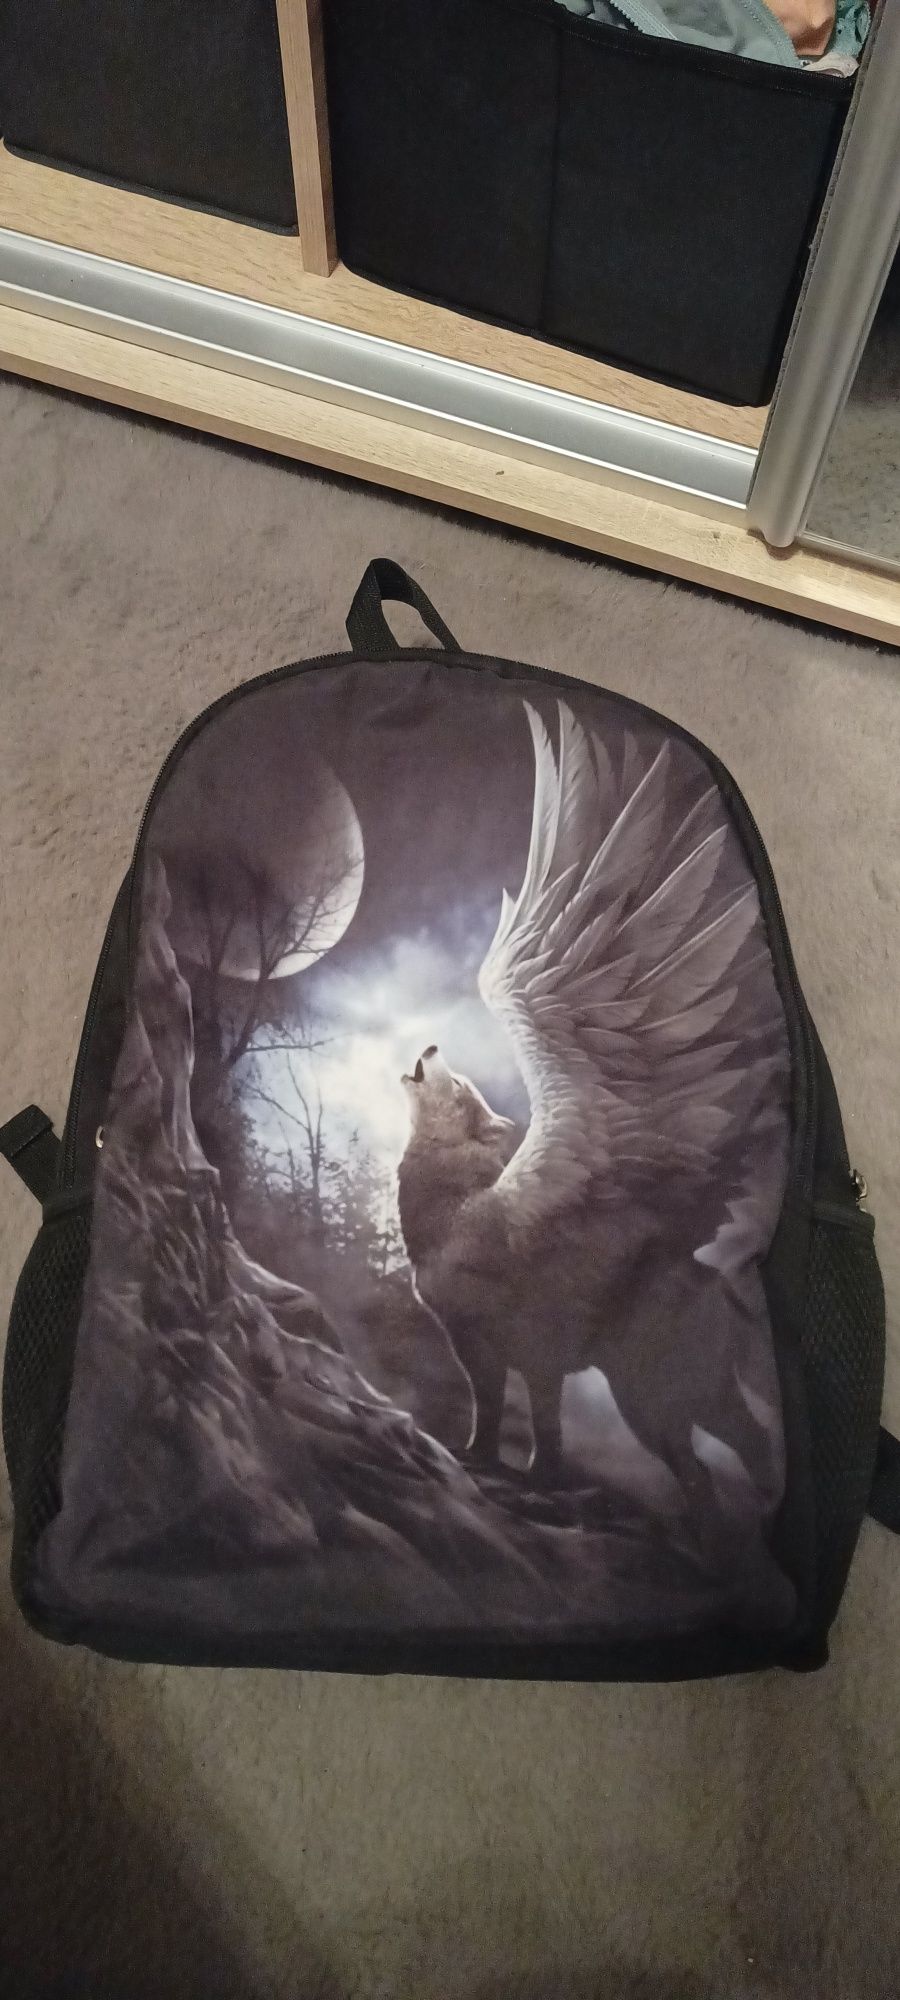 Plecak torba emo alternative wilk skrzydła skała metal nadruk czarny